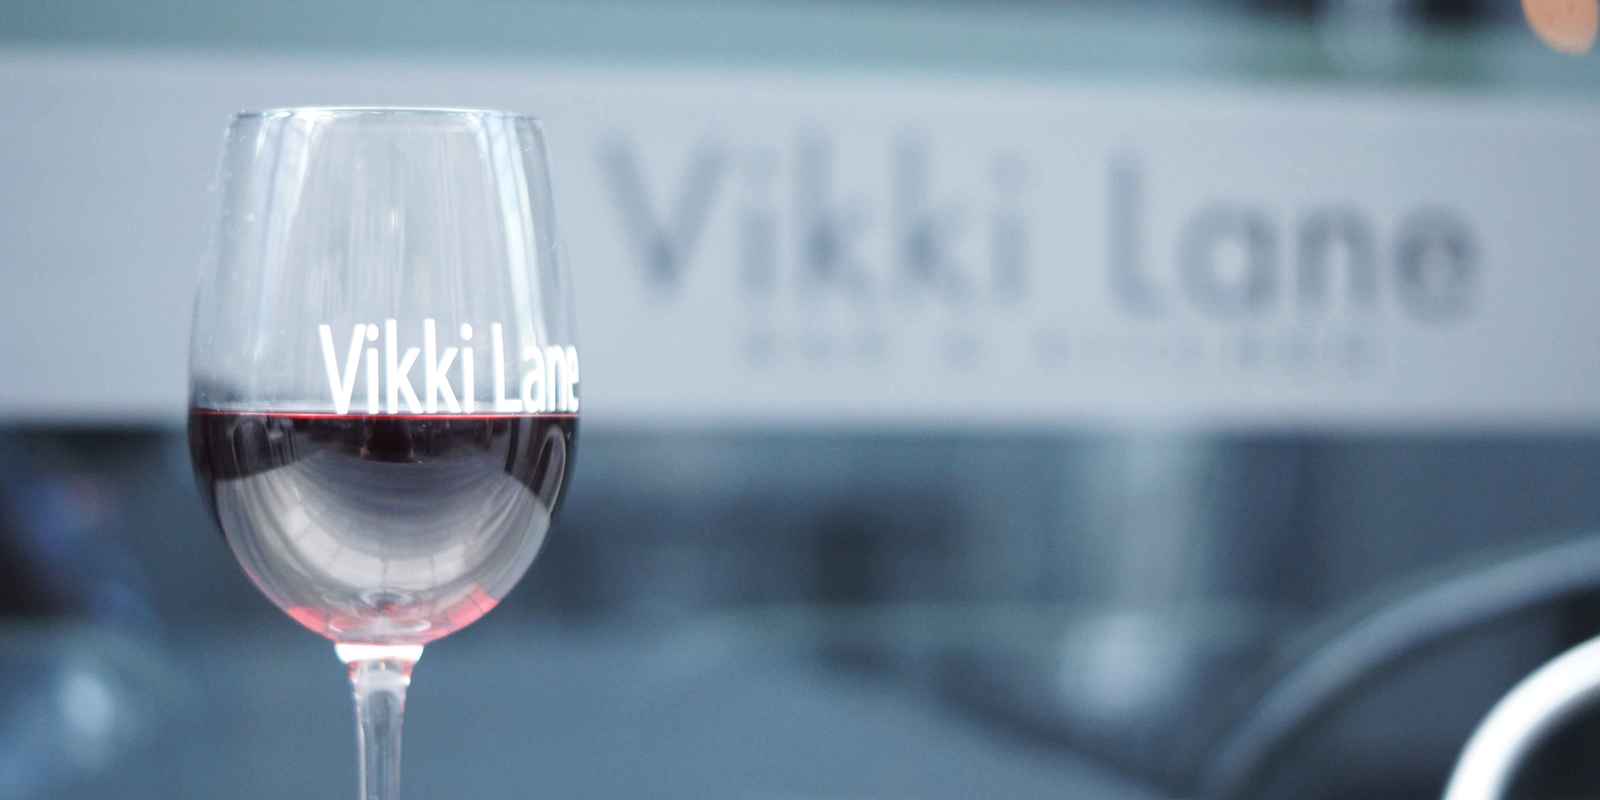 Vikki Lane Bar & Kitchen